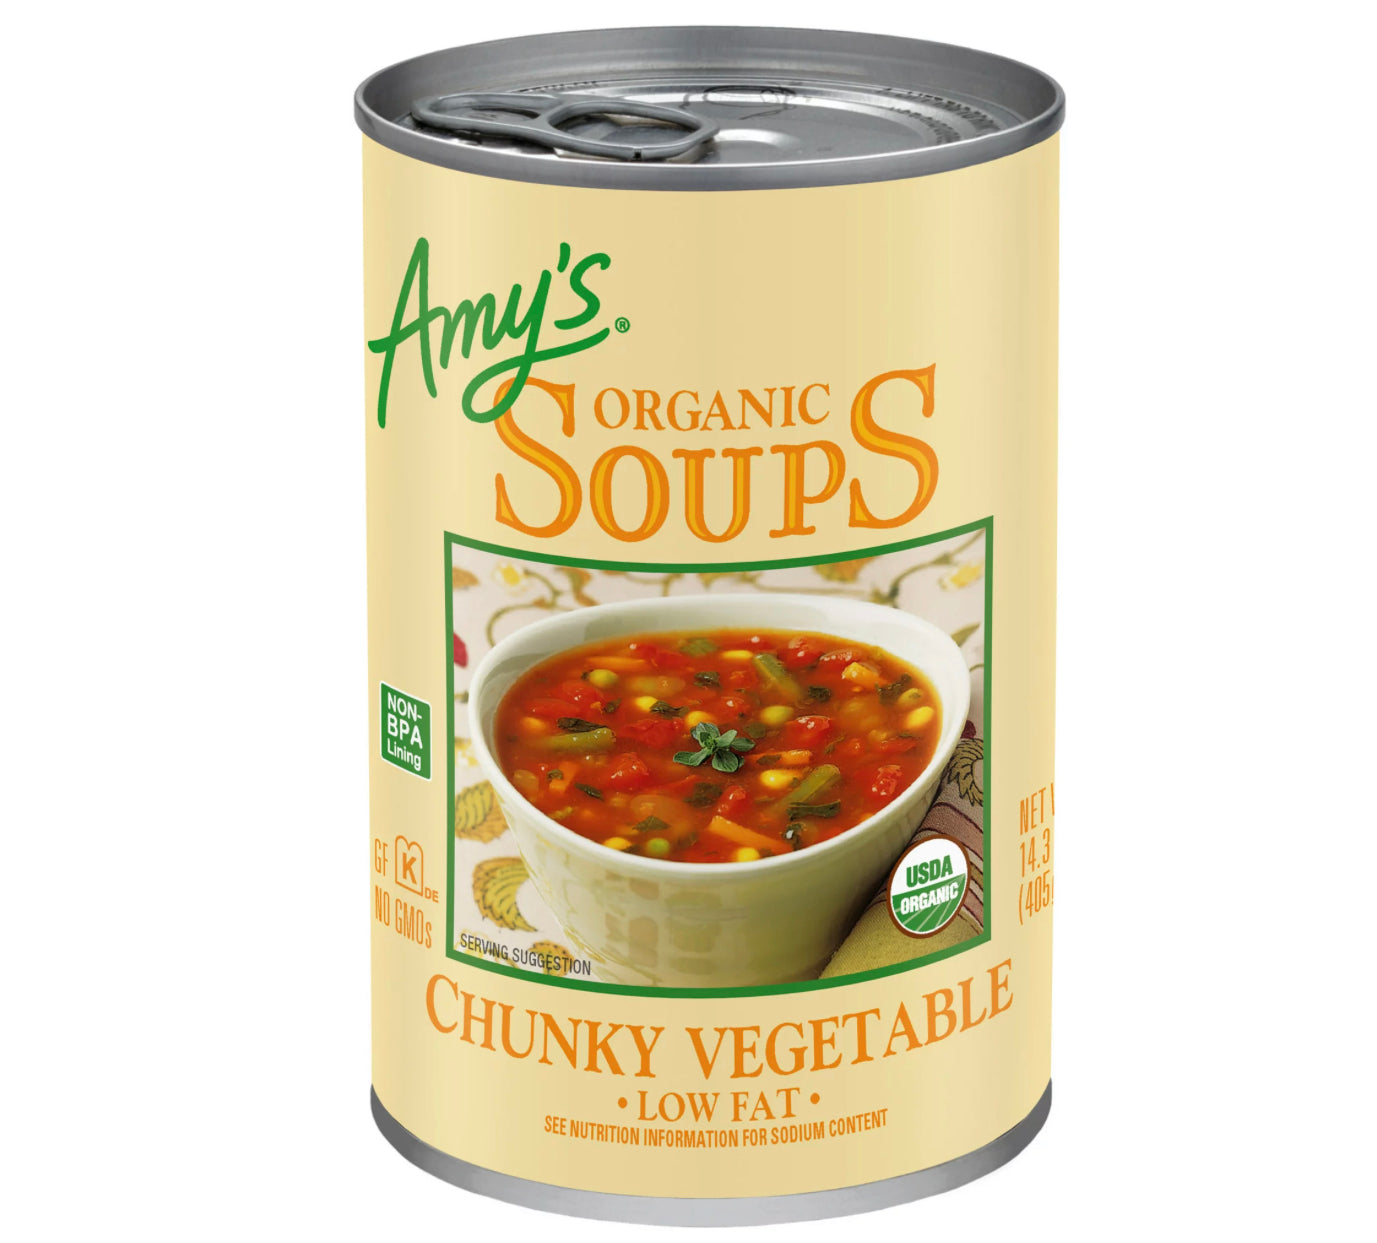 Amy's Organic Soups Chunky Vegetable 14.3oz